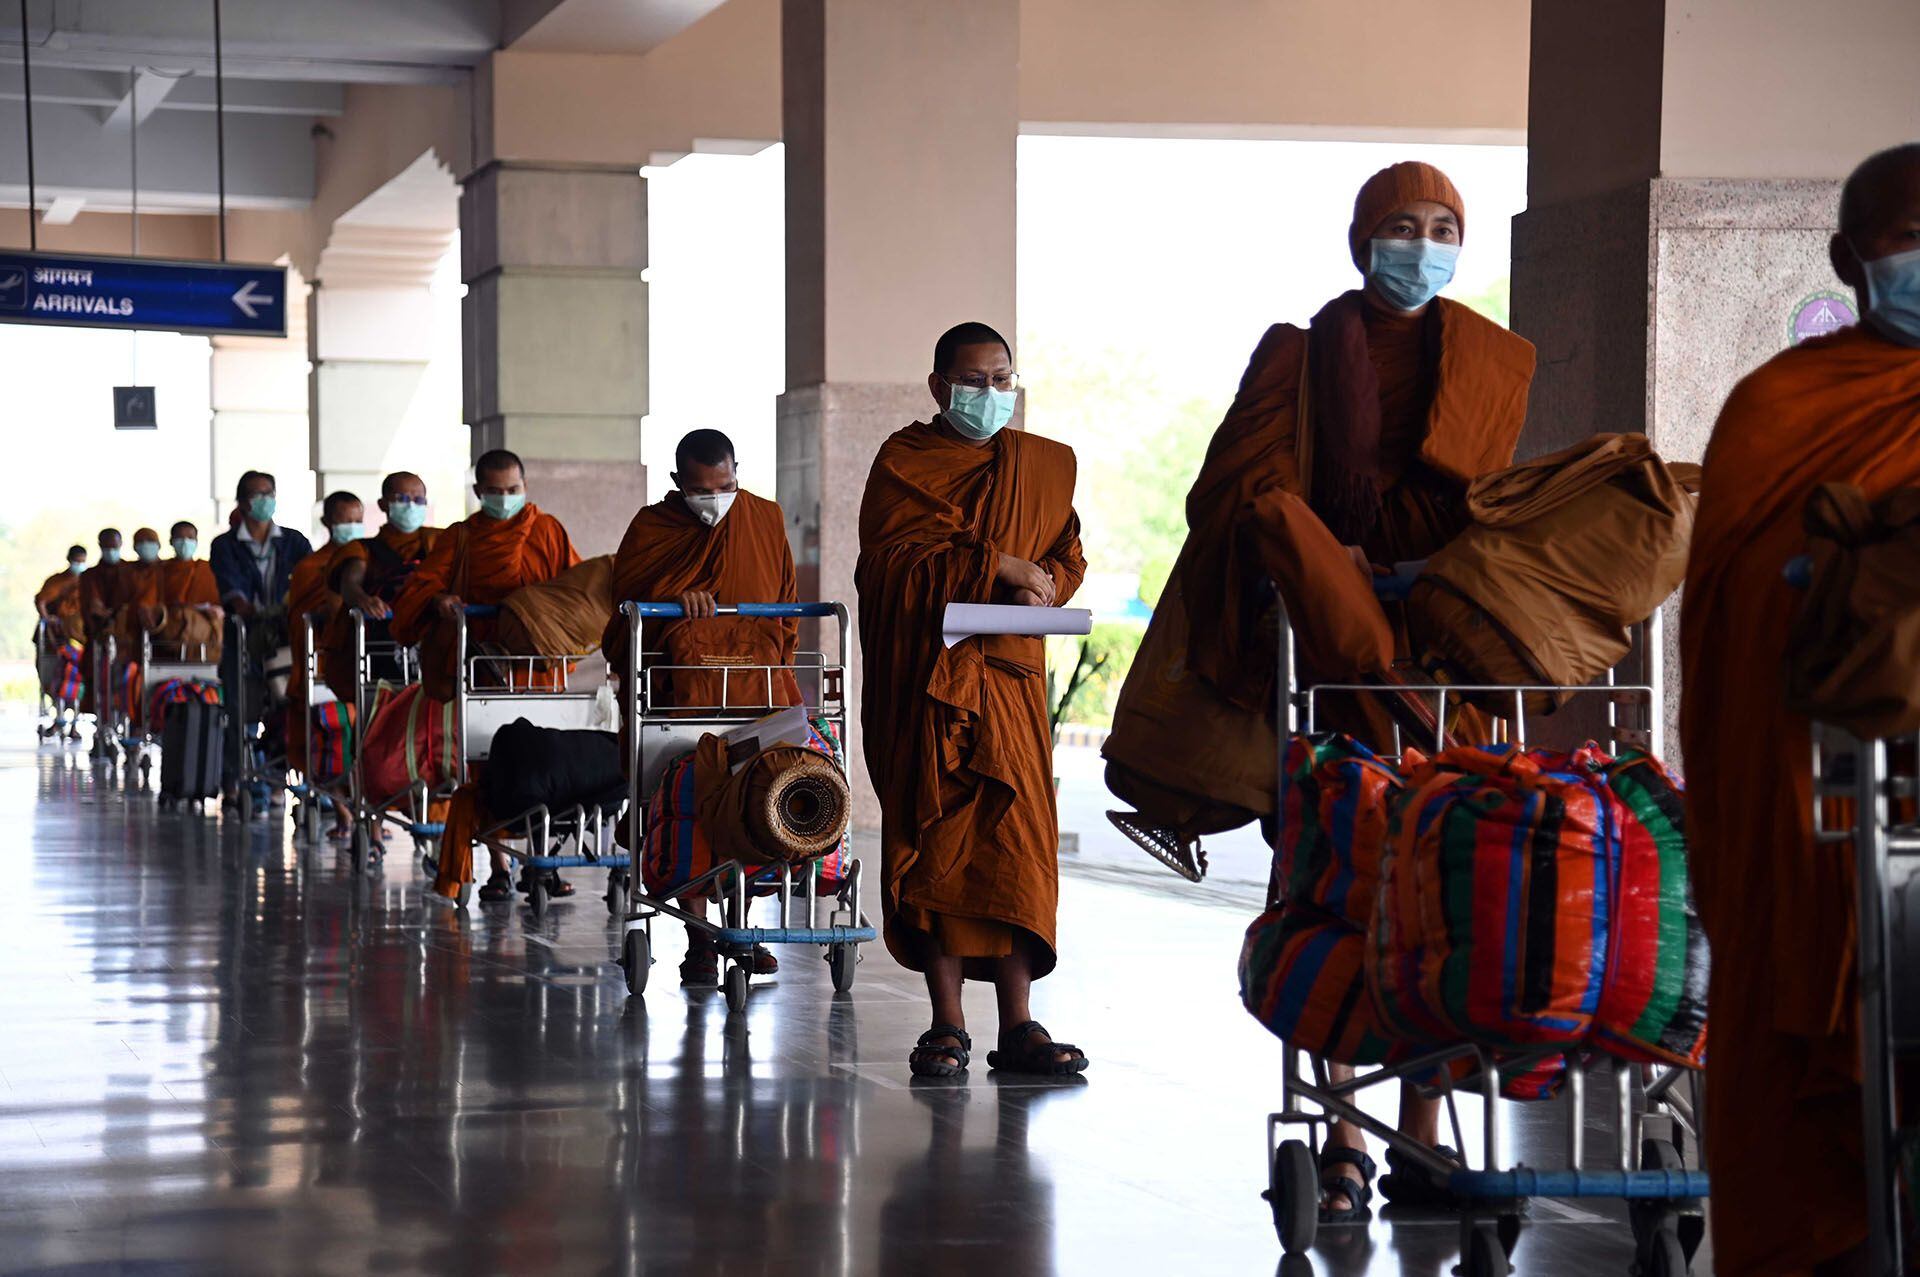 Monjes budistas de nacionalidad tailandesa hacen cola antes de facturar un vuelo con destino a Tailandia durante la cuarentena en el aeropuerto internacional de Gaya, a unos 5 km de Bodhgaya, el 24 de abril de 2020. (Foto de SUMAN / AFP)